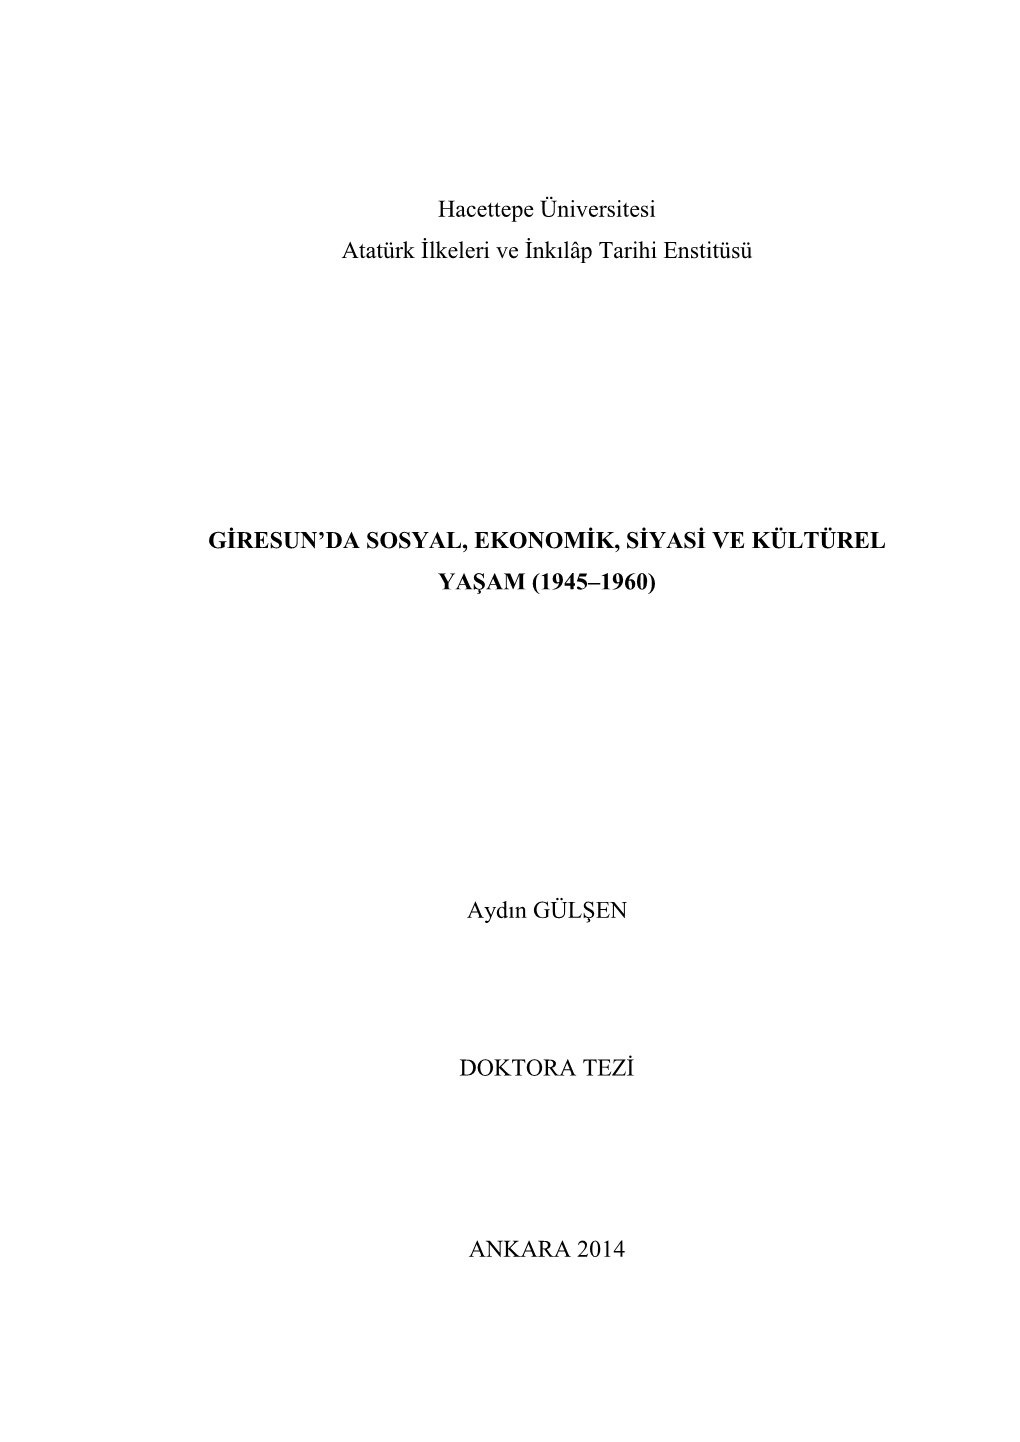 Giresun'da Sosyal, Ekonomik, Siyasi Ve Kültürel Yaşam (1945–1960)